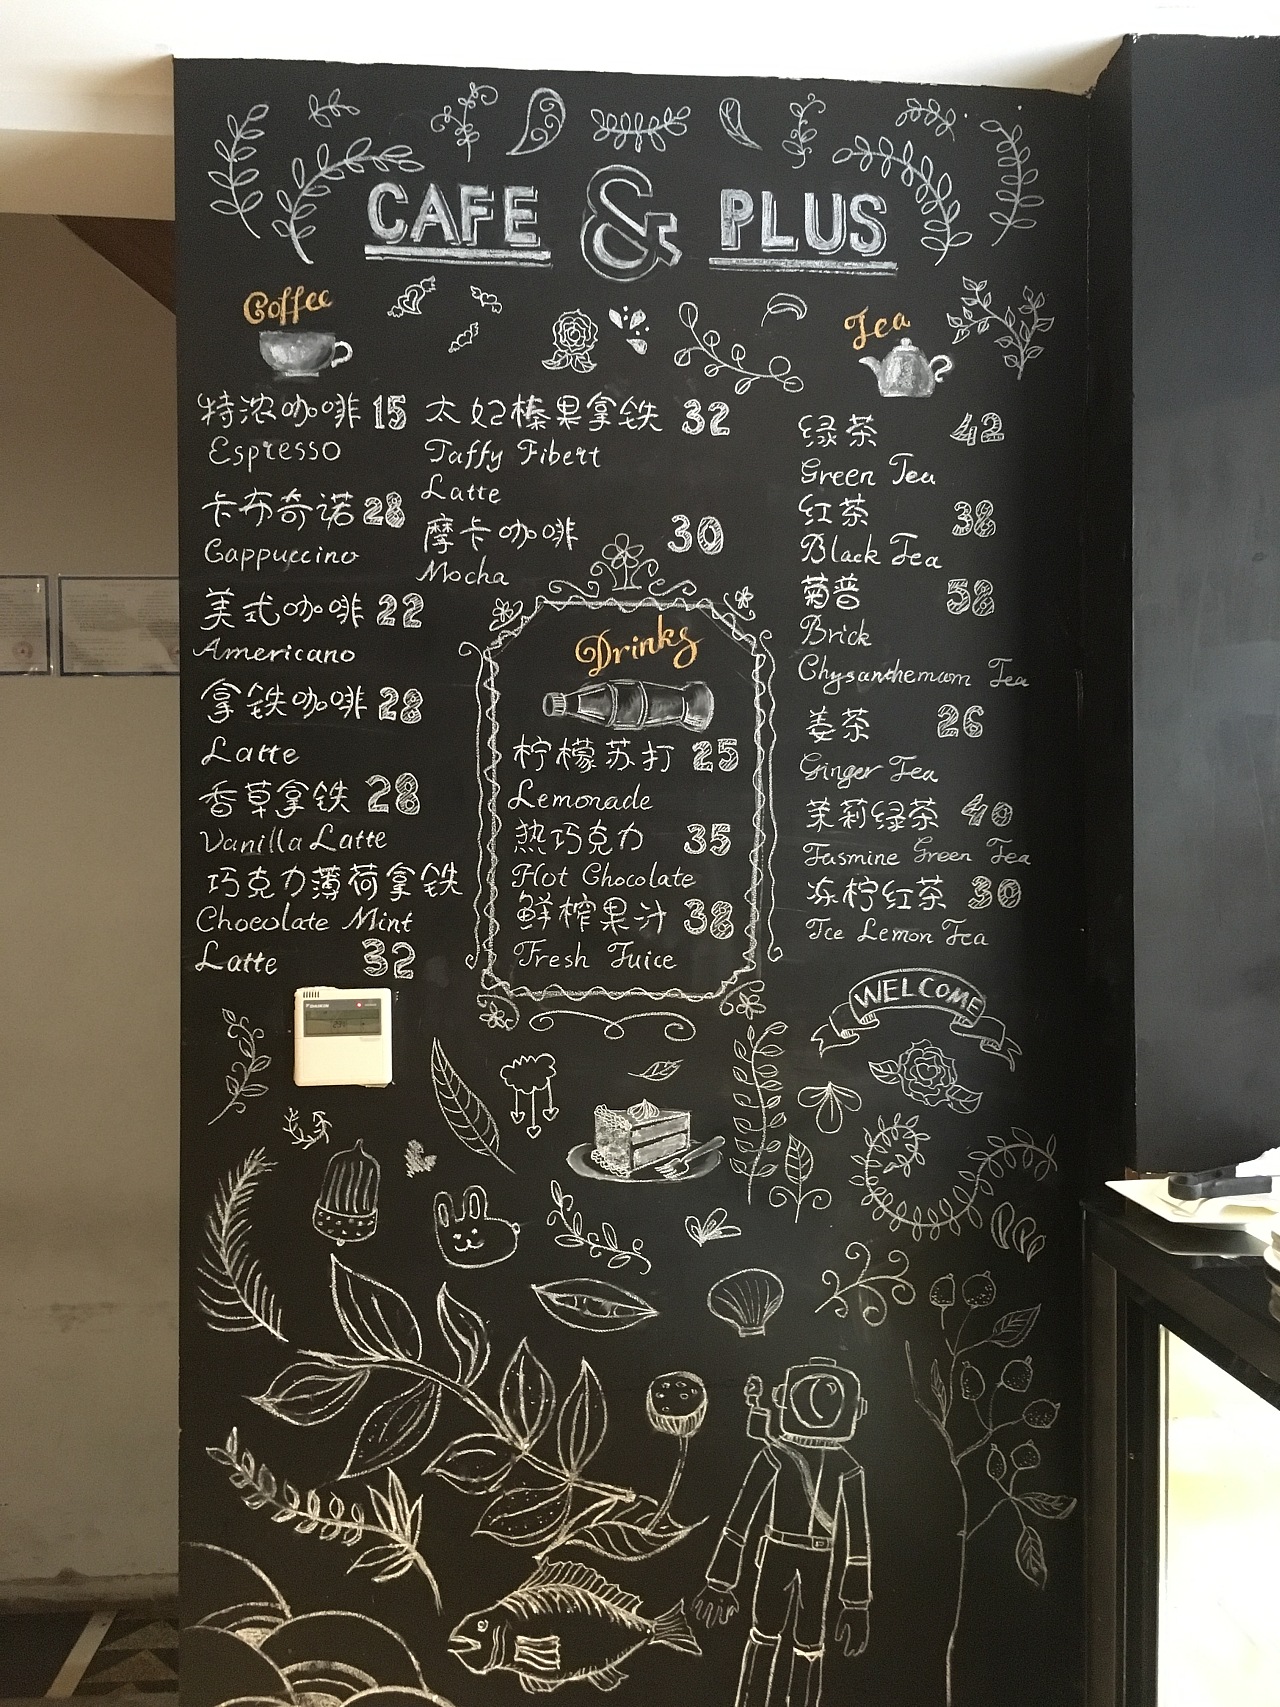 咖啡厅里的黑板菜单摄影图高清摄影大图-千库网